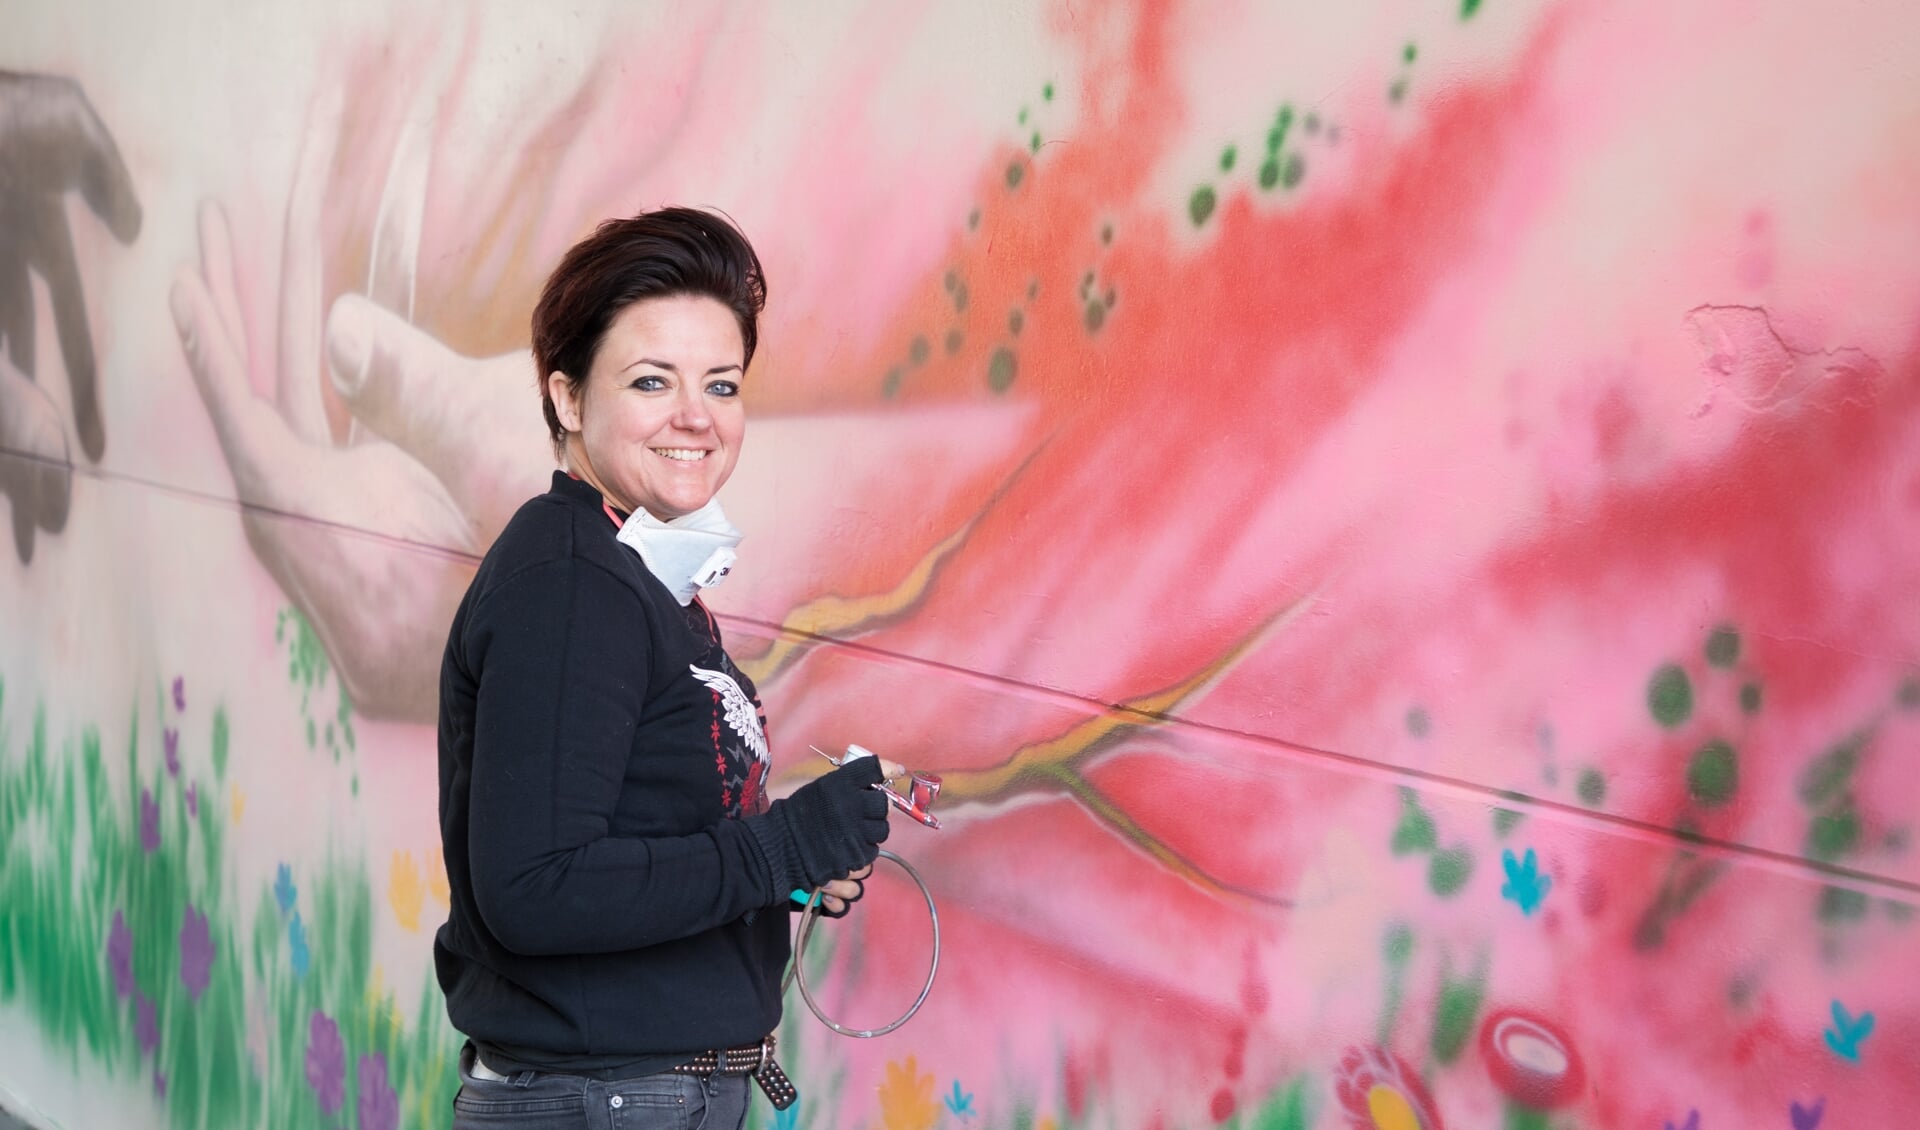 Willeke van Doorn-Timmer heeft een boodschap met haar muurschildering. "Ben lief voor jezelf, dan kun je ook lief zijn voor de ander.” Foto: Wiek van Lieshout